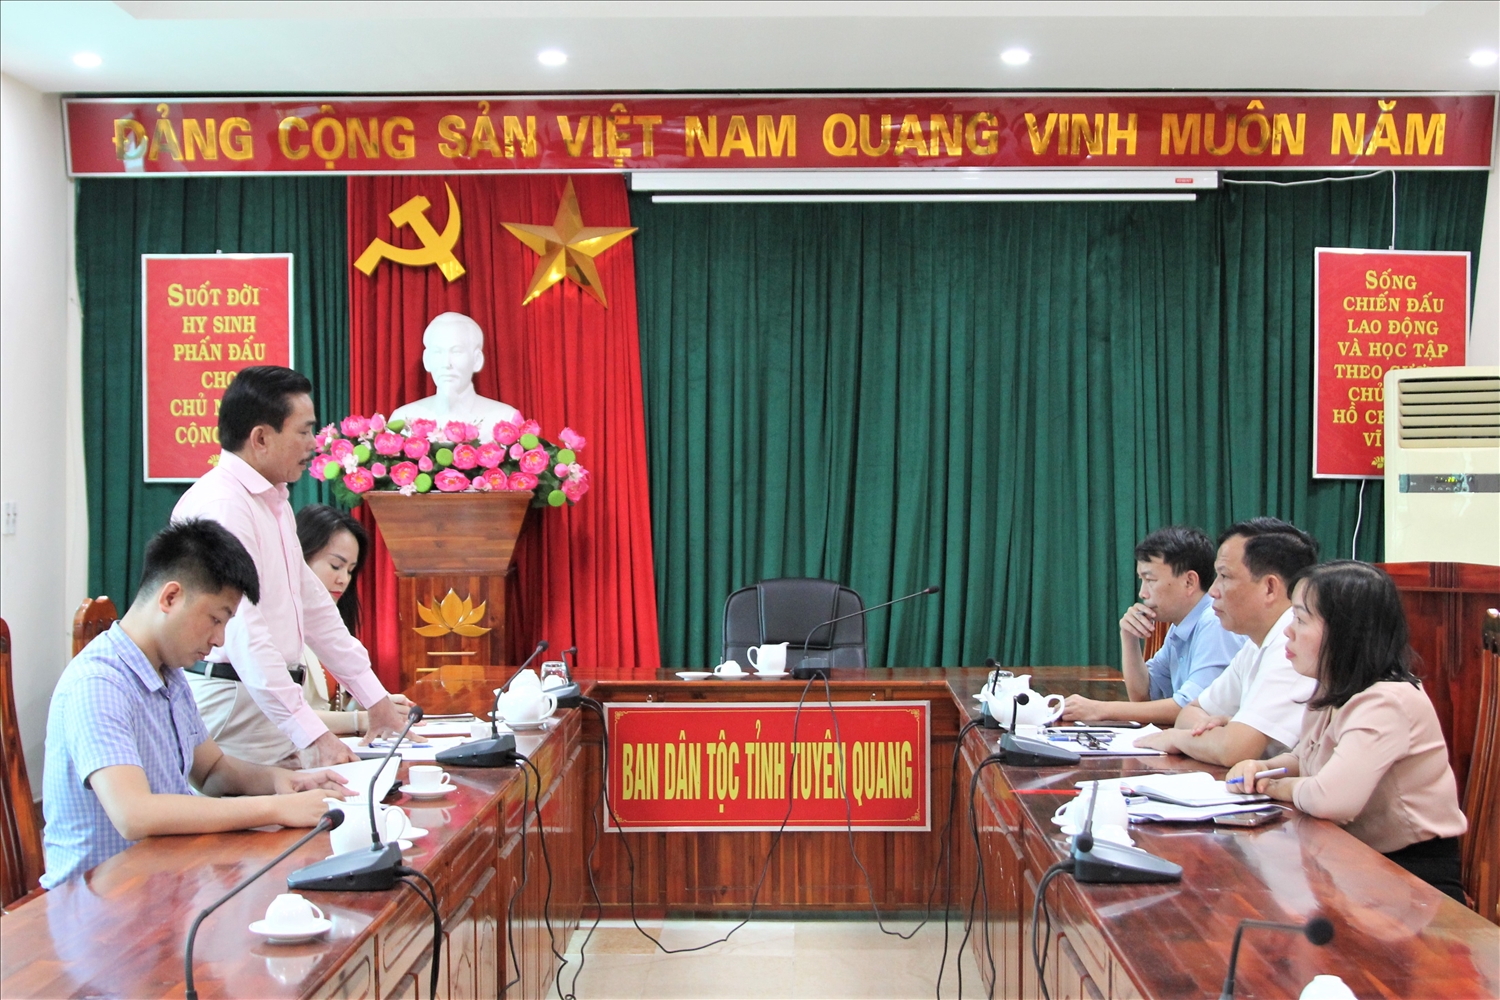 Tổng Biên tập Báo Dân tộc và Phát triển Lê Công Bình phát biểu tại buổi làm việc với Ban Dân tộc tỉnh Tuyên Quang